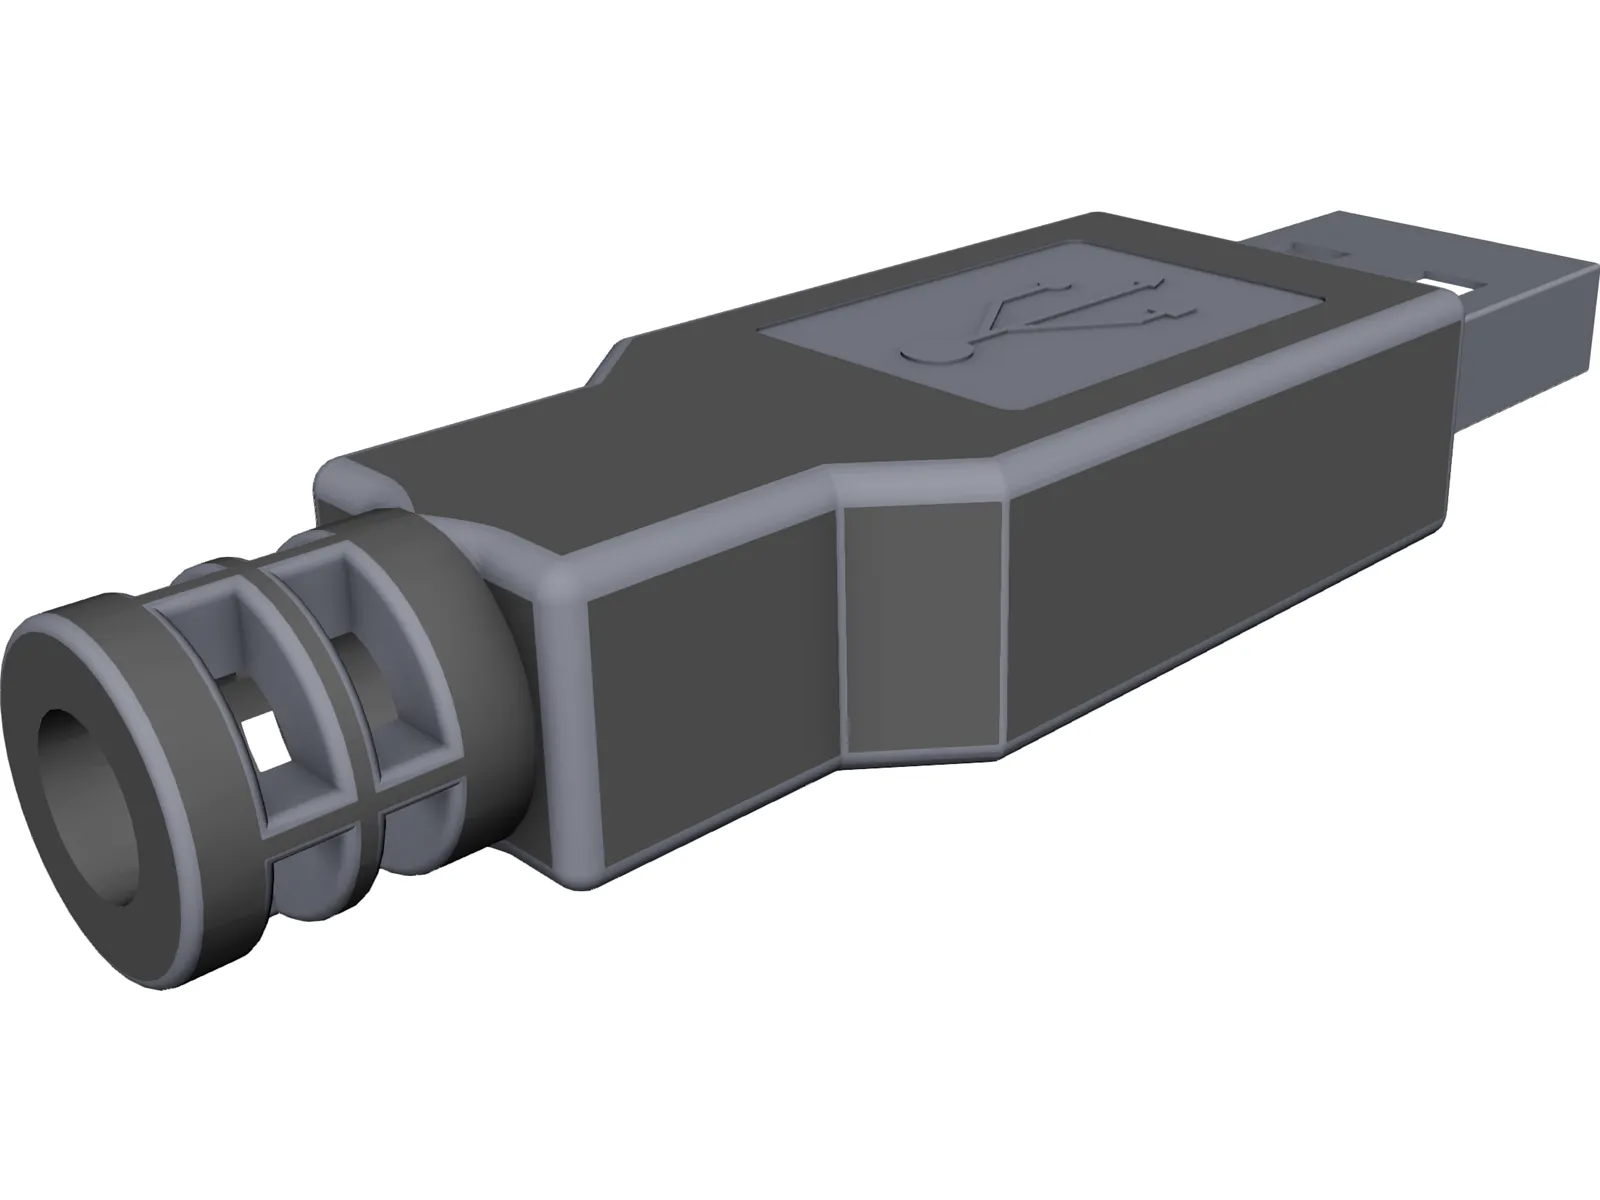 forbrug New Zealand kant USB Connector Free 3D CAD Model - 3D CAD Browser